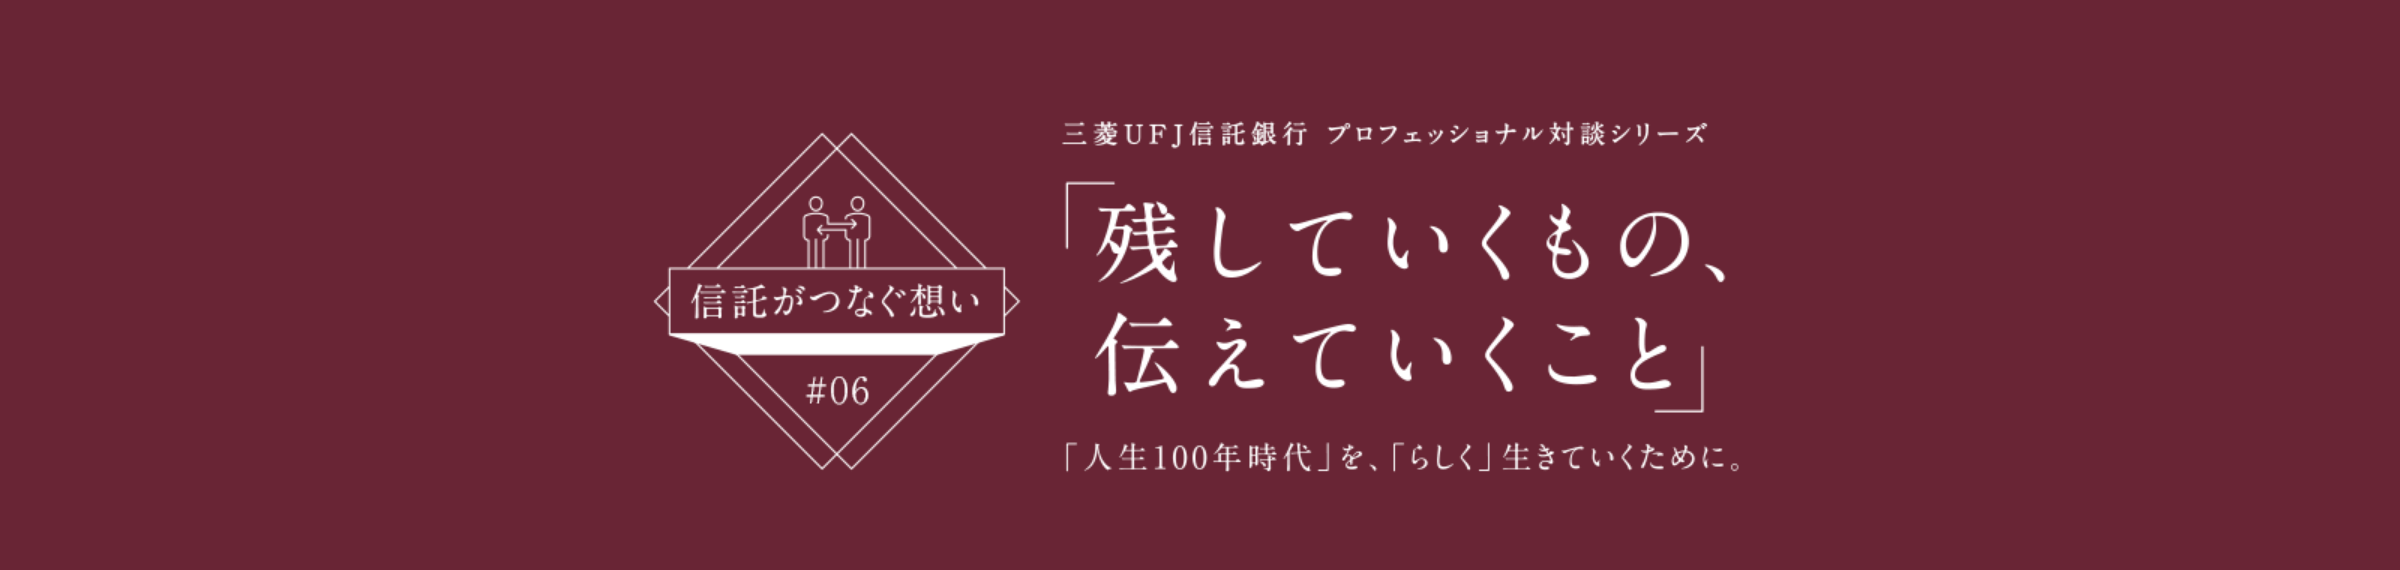 【信託がつなぐ想い #06】 三菱ＵＦＪ信託銀行 プロフェッショナル対談シリーズ 「残していくもの、伝えていくこと」 「人生100年時代」を、「らしく」生きていくために。